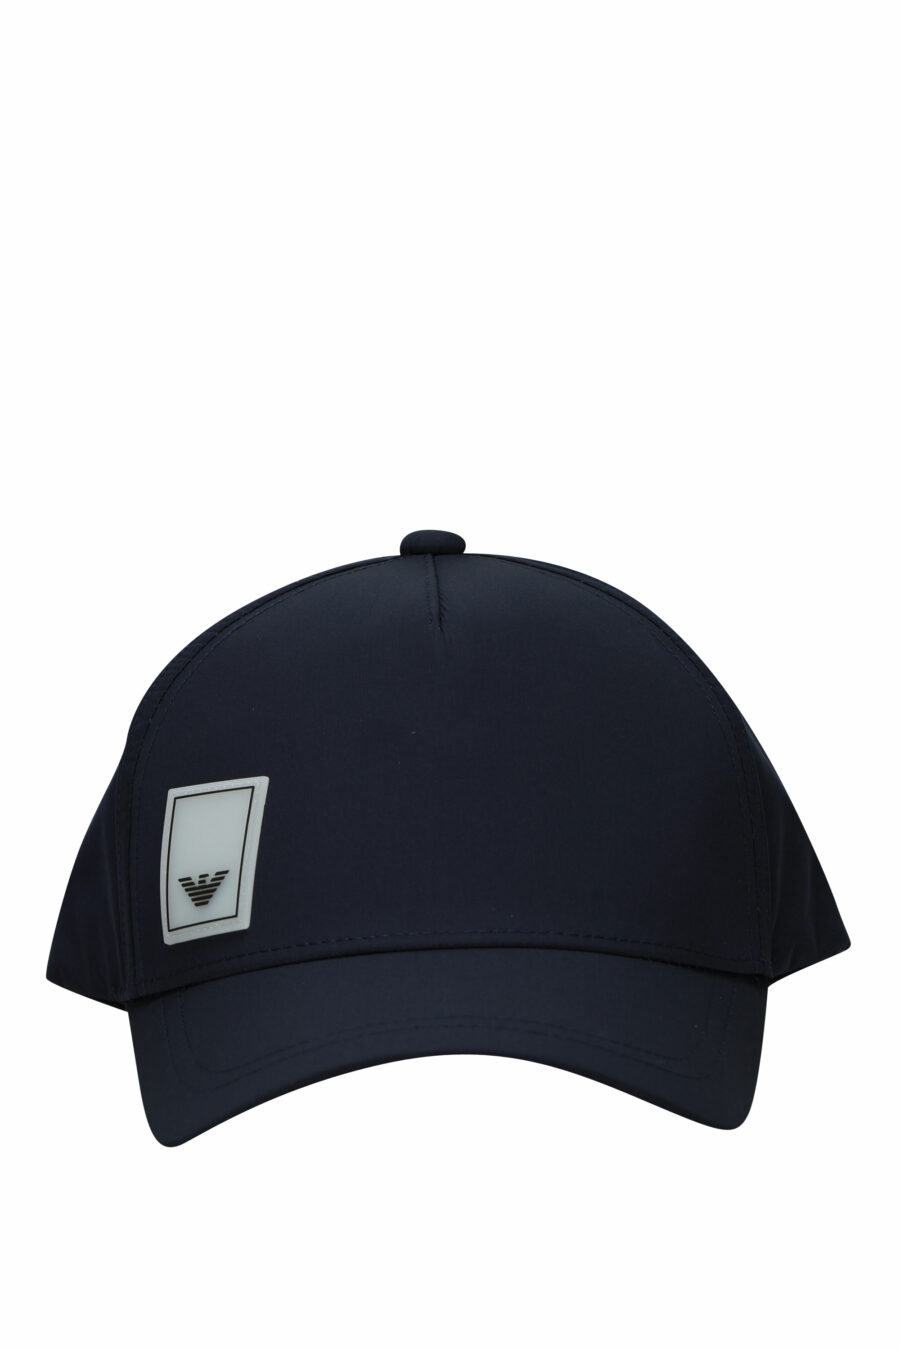 Dunkelblaue Mütze mit Logo-Adler-Etikett - 8058997153355